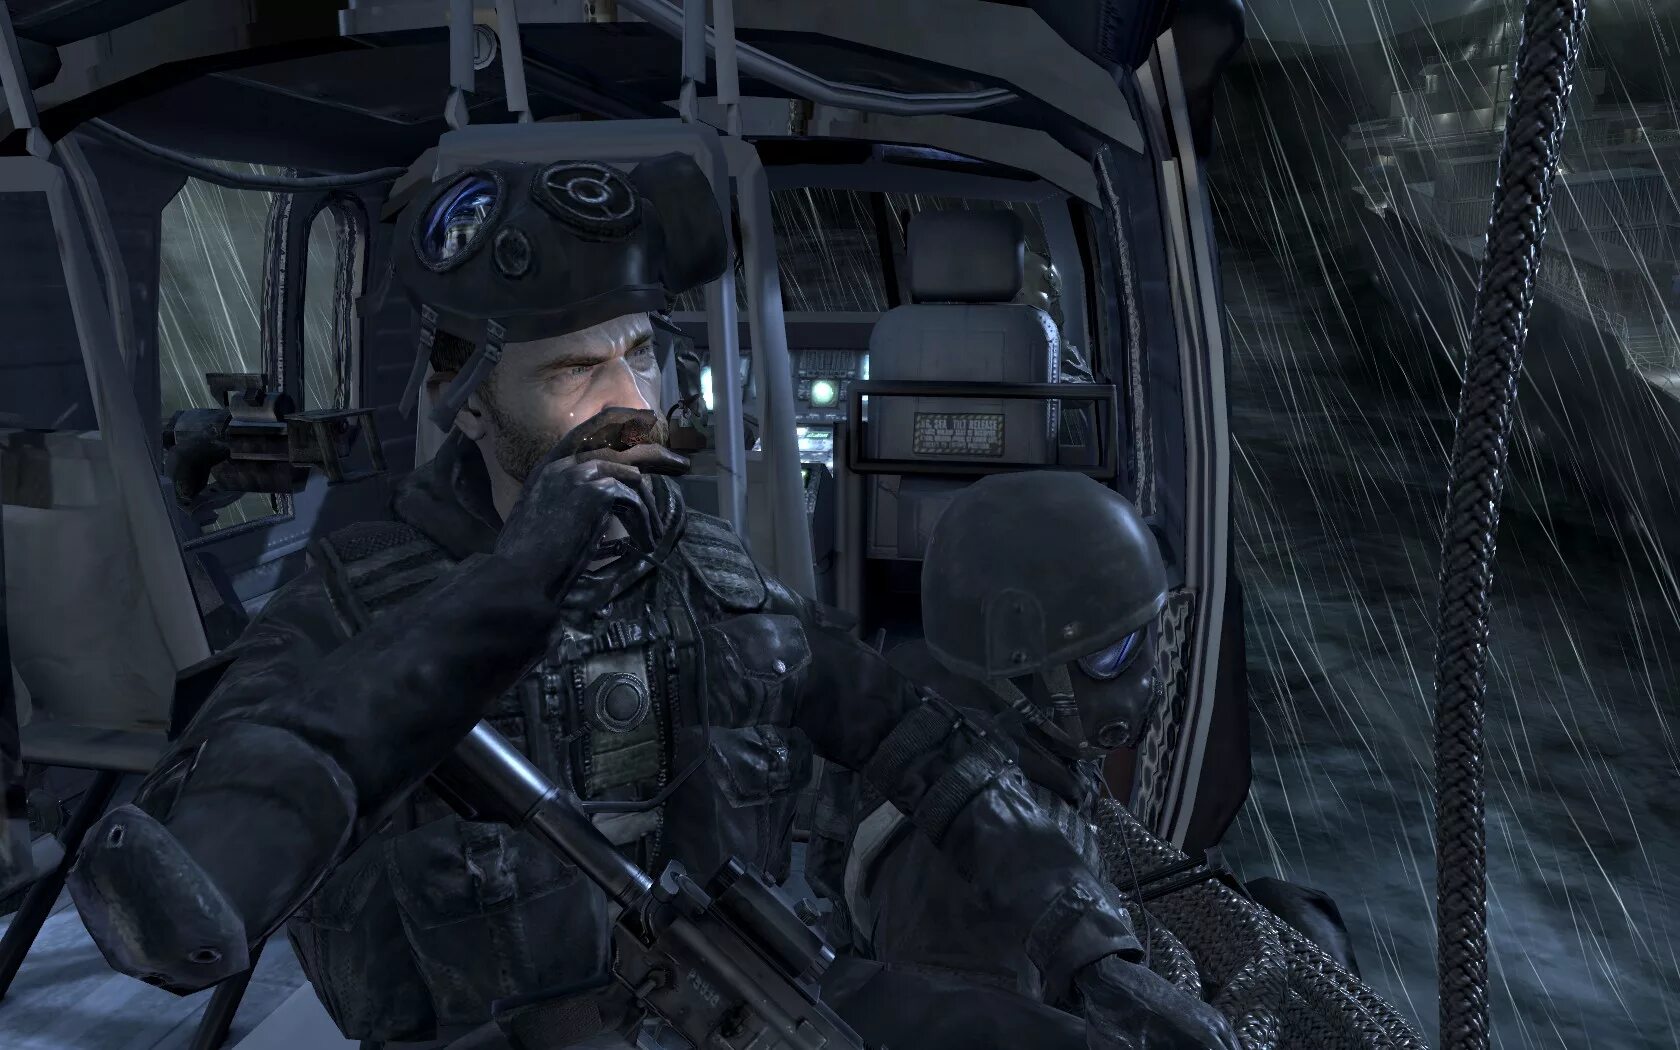 Капитан Соуп из Call of Duty 2019. Modern Warfare 2019 Соуп. Cod 4 MW Captain Price. Call of Duty 4 Modern Warfare Капитан прайс.